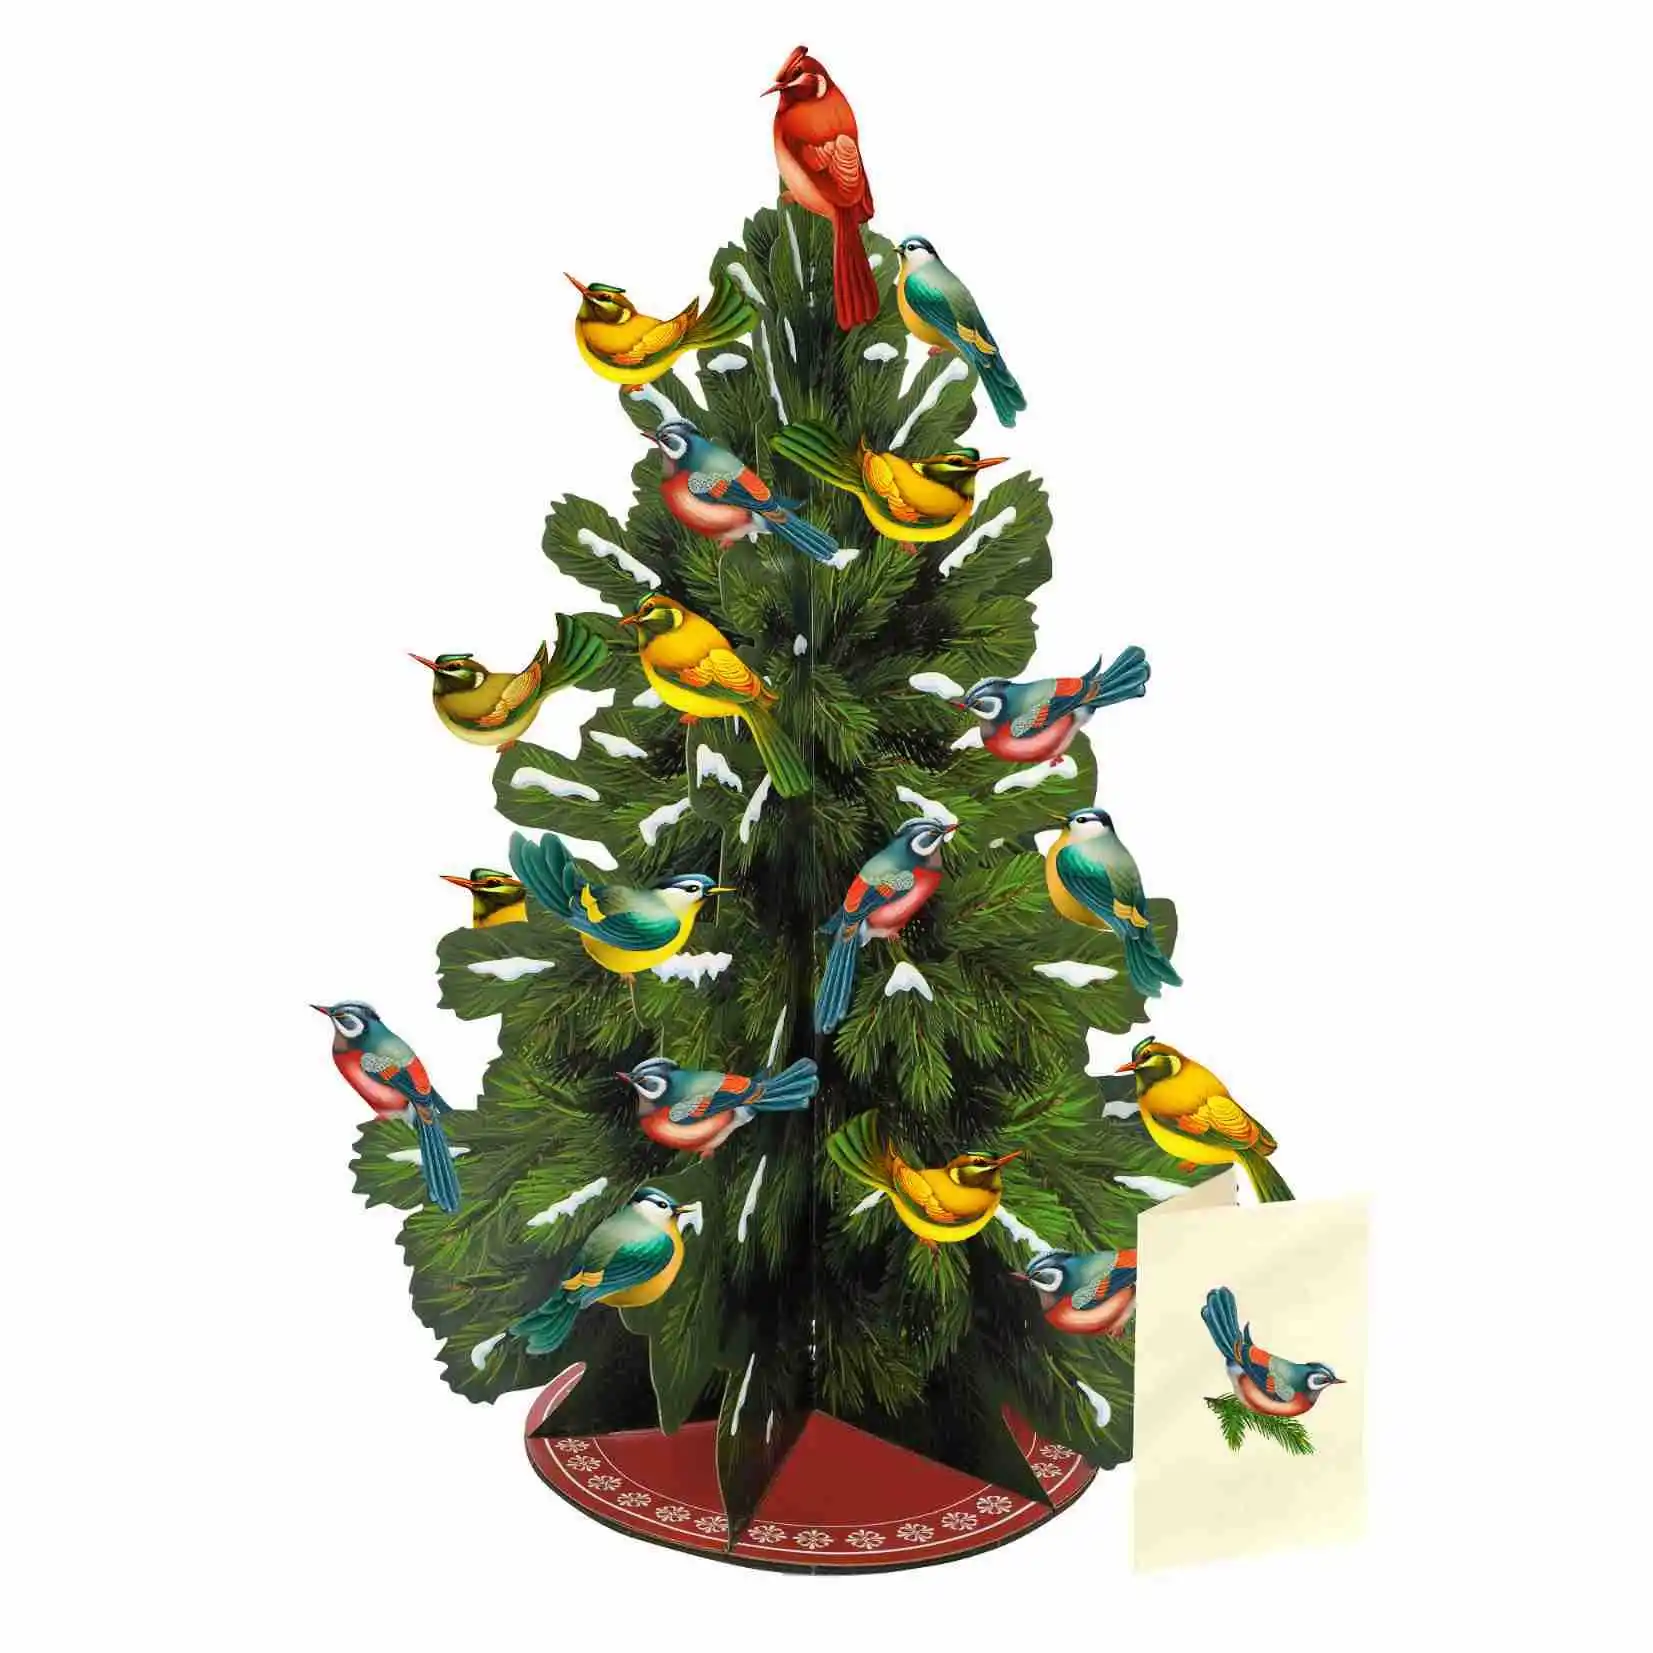 3D Pop-up Weihnachts baum Abnehmbare Vogel dekorationen Leere Weihnachts karten und Umschläge Weihnachts feier dekorationen